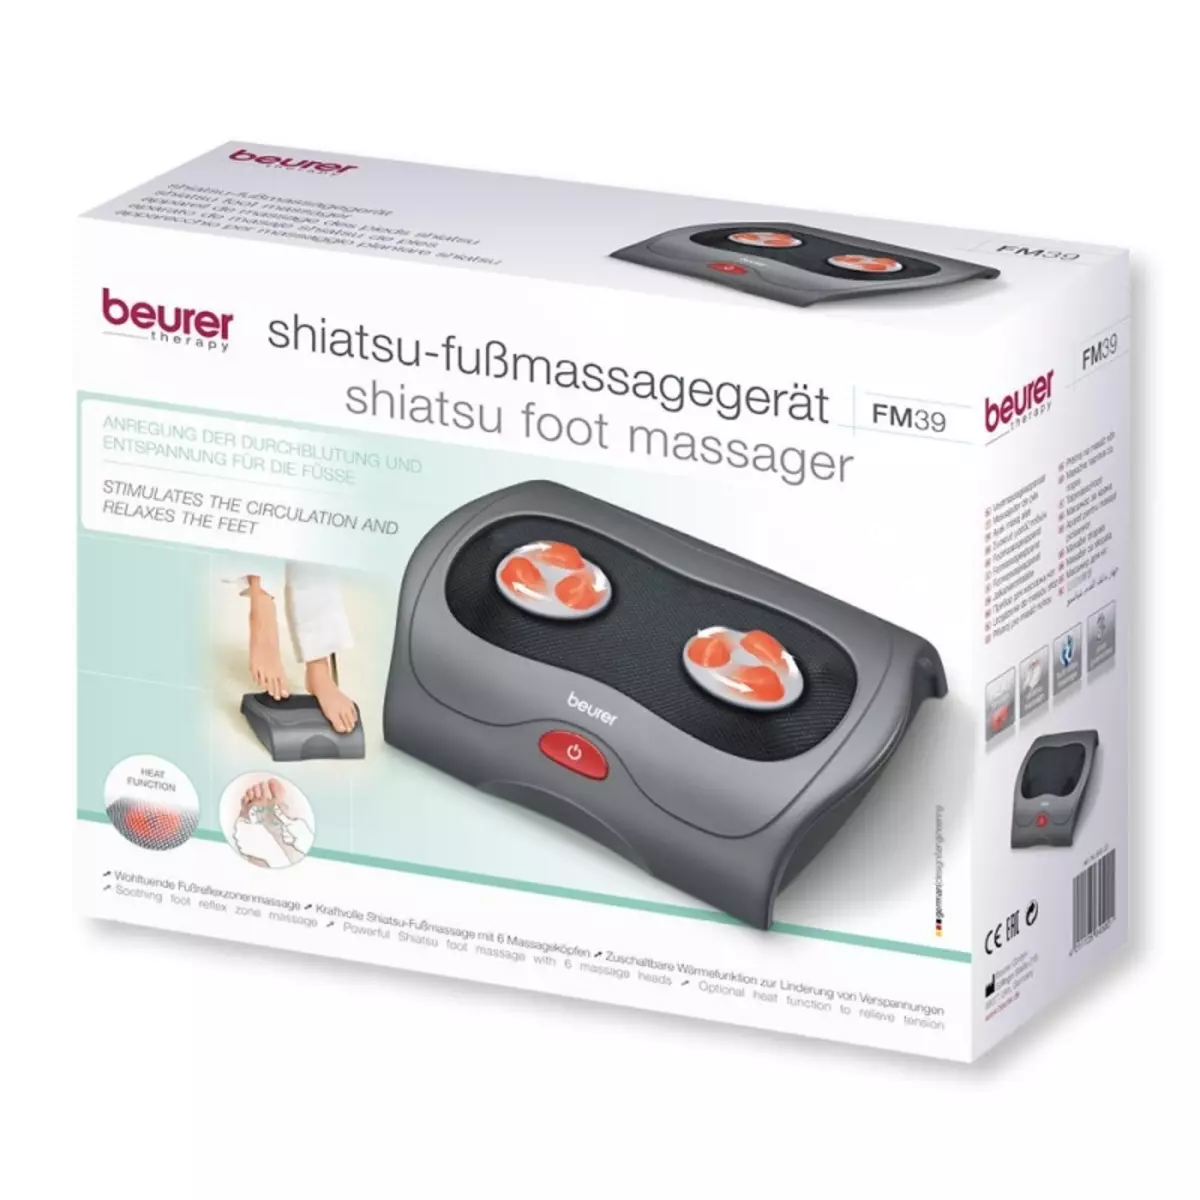 Beurer Foot Massagers: FM39 e outros modelos, instruções para seu uso. Descrição do massageador branco elétrico 16305_11